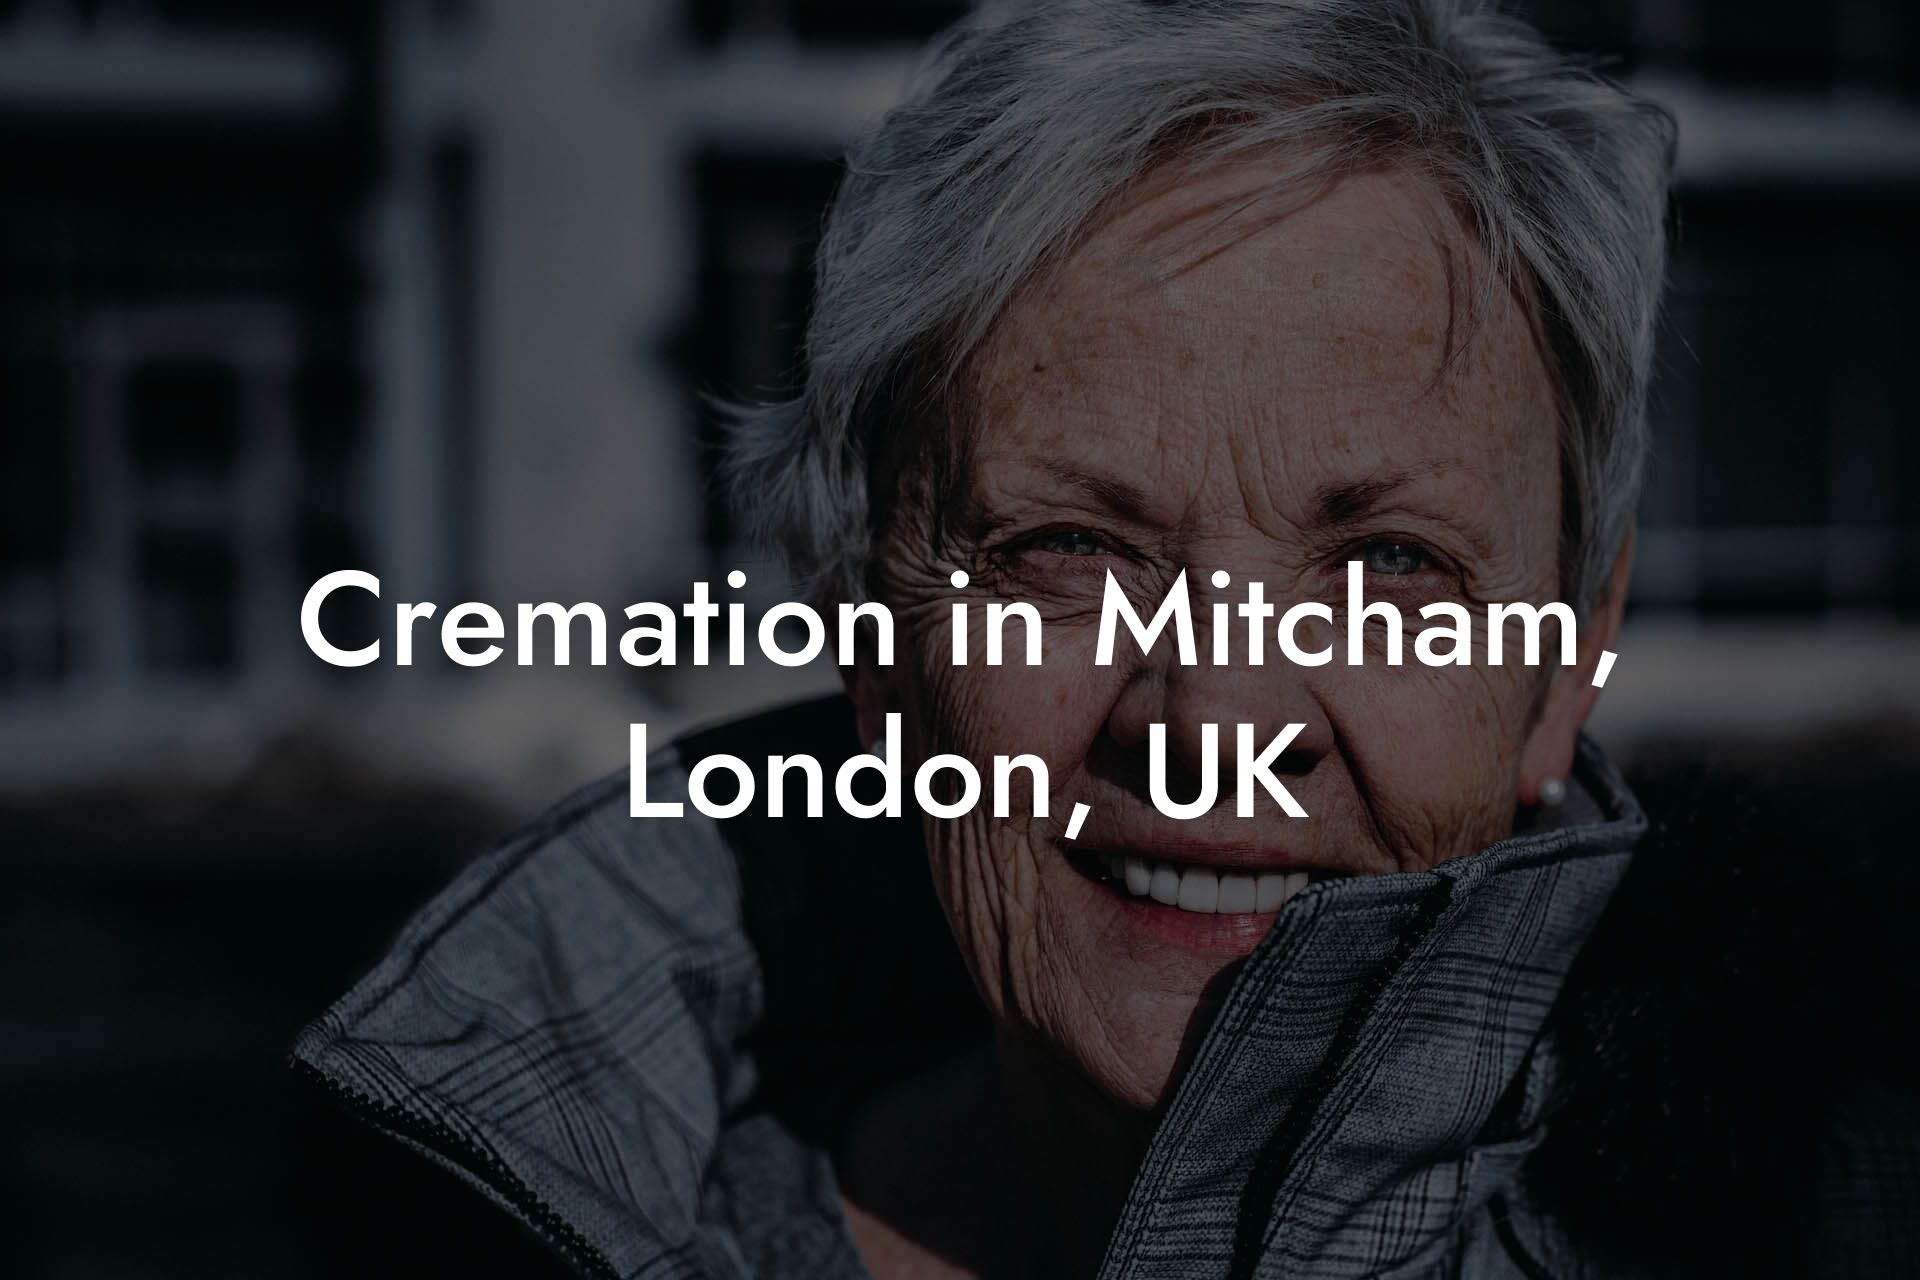 Cremation in Mitcham, London, UK